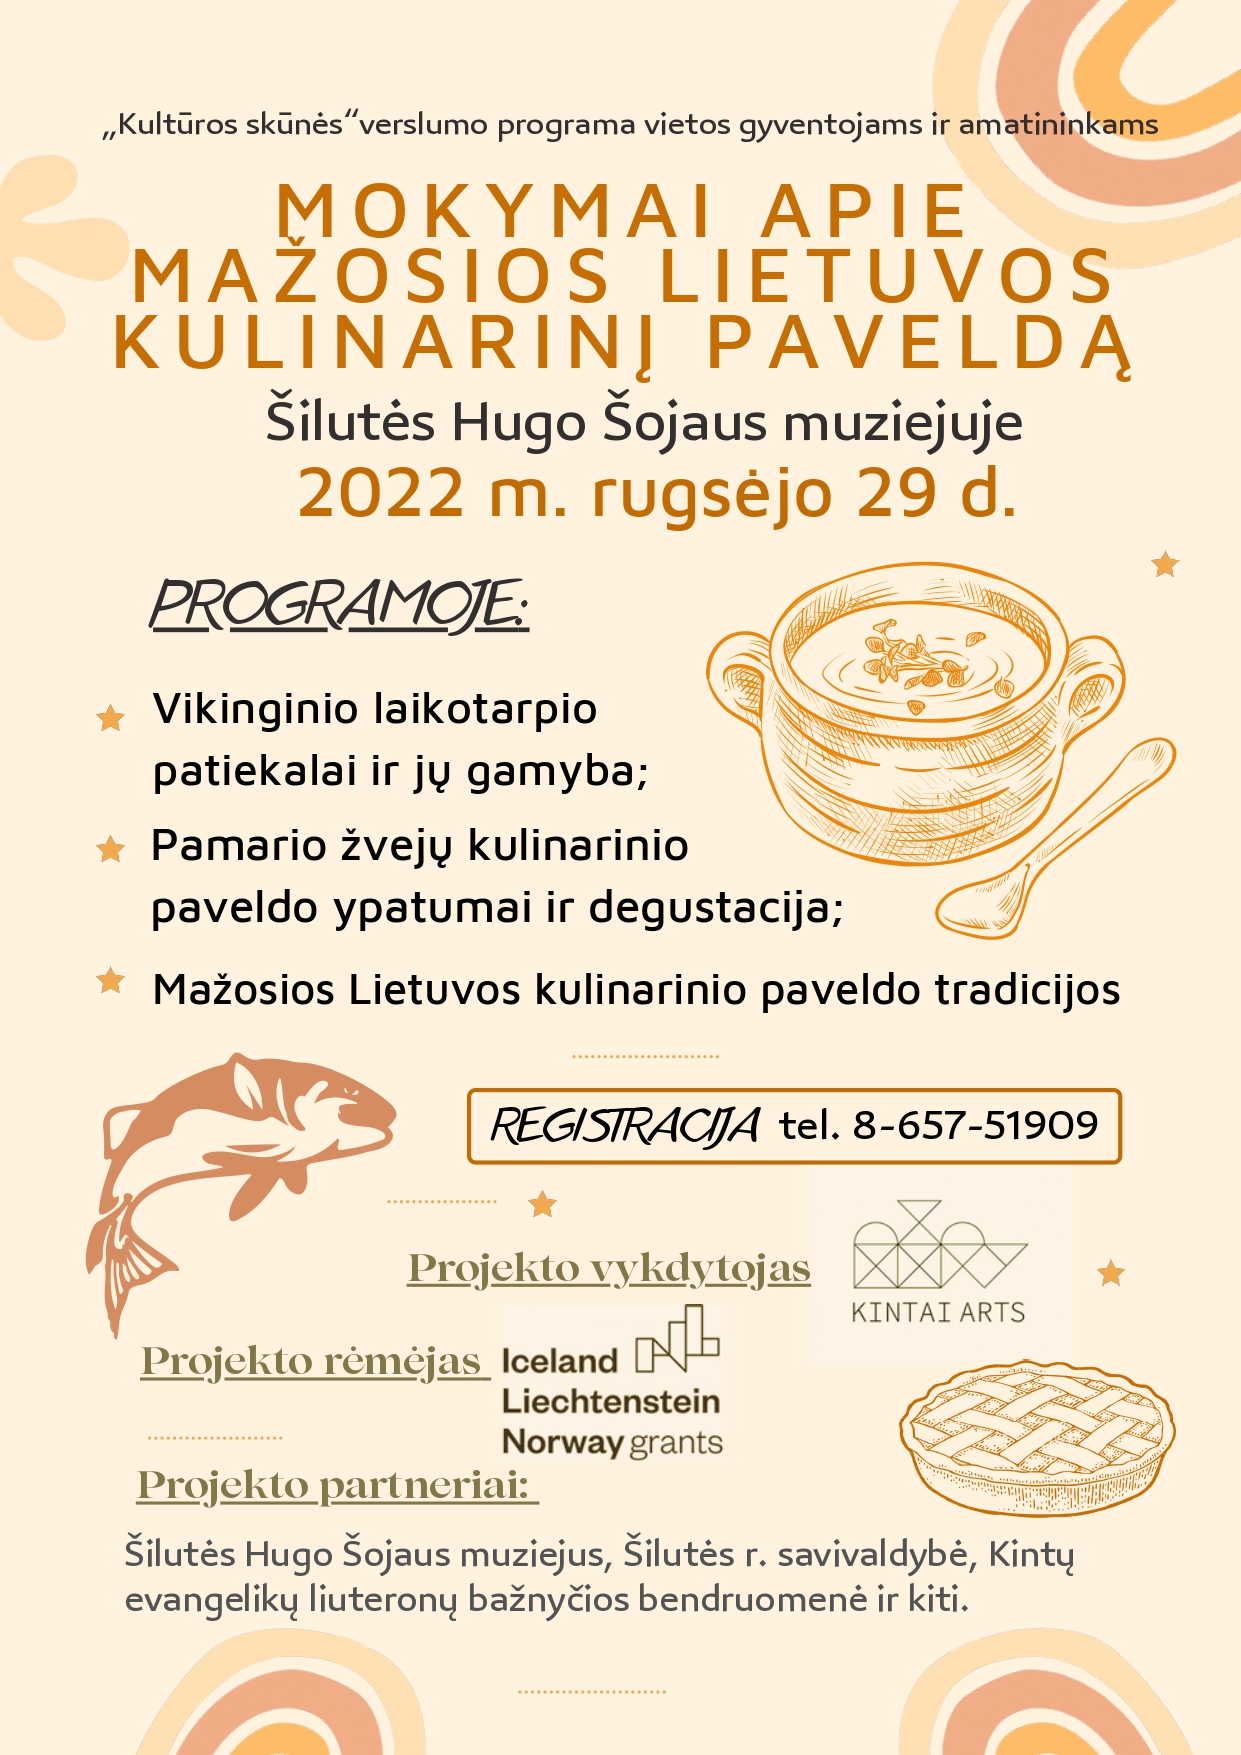 Mokymai apie Mažosios Lietuvos kulinarinį paveldą